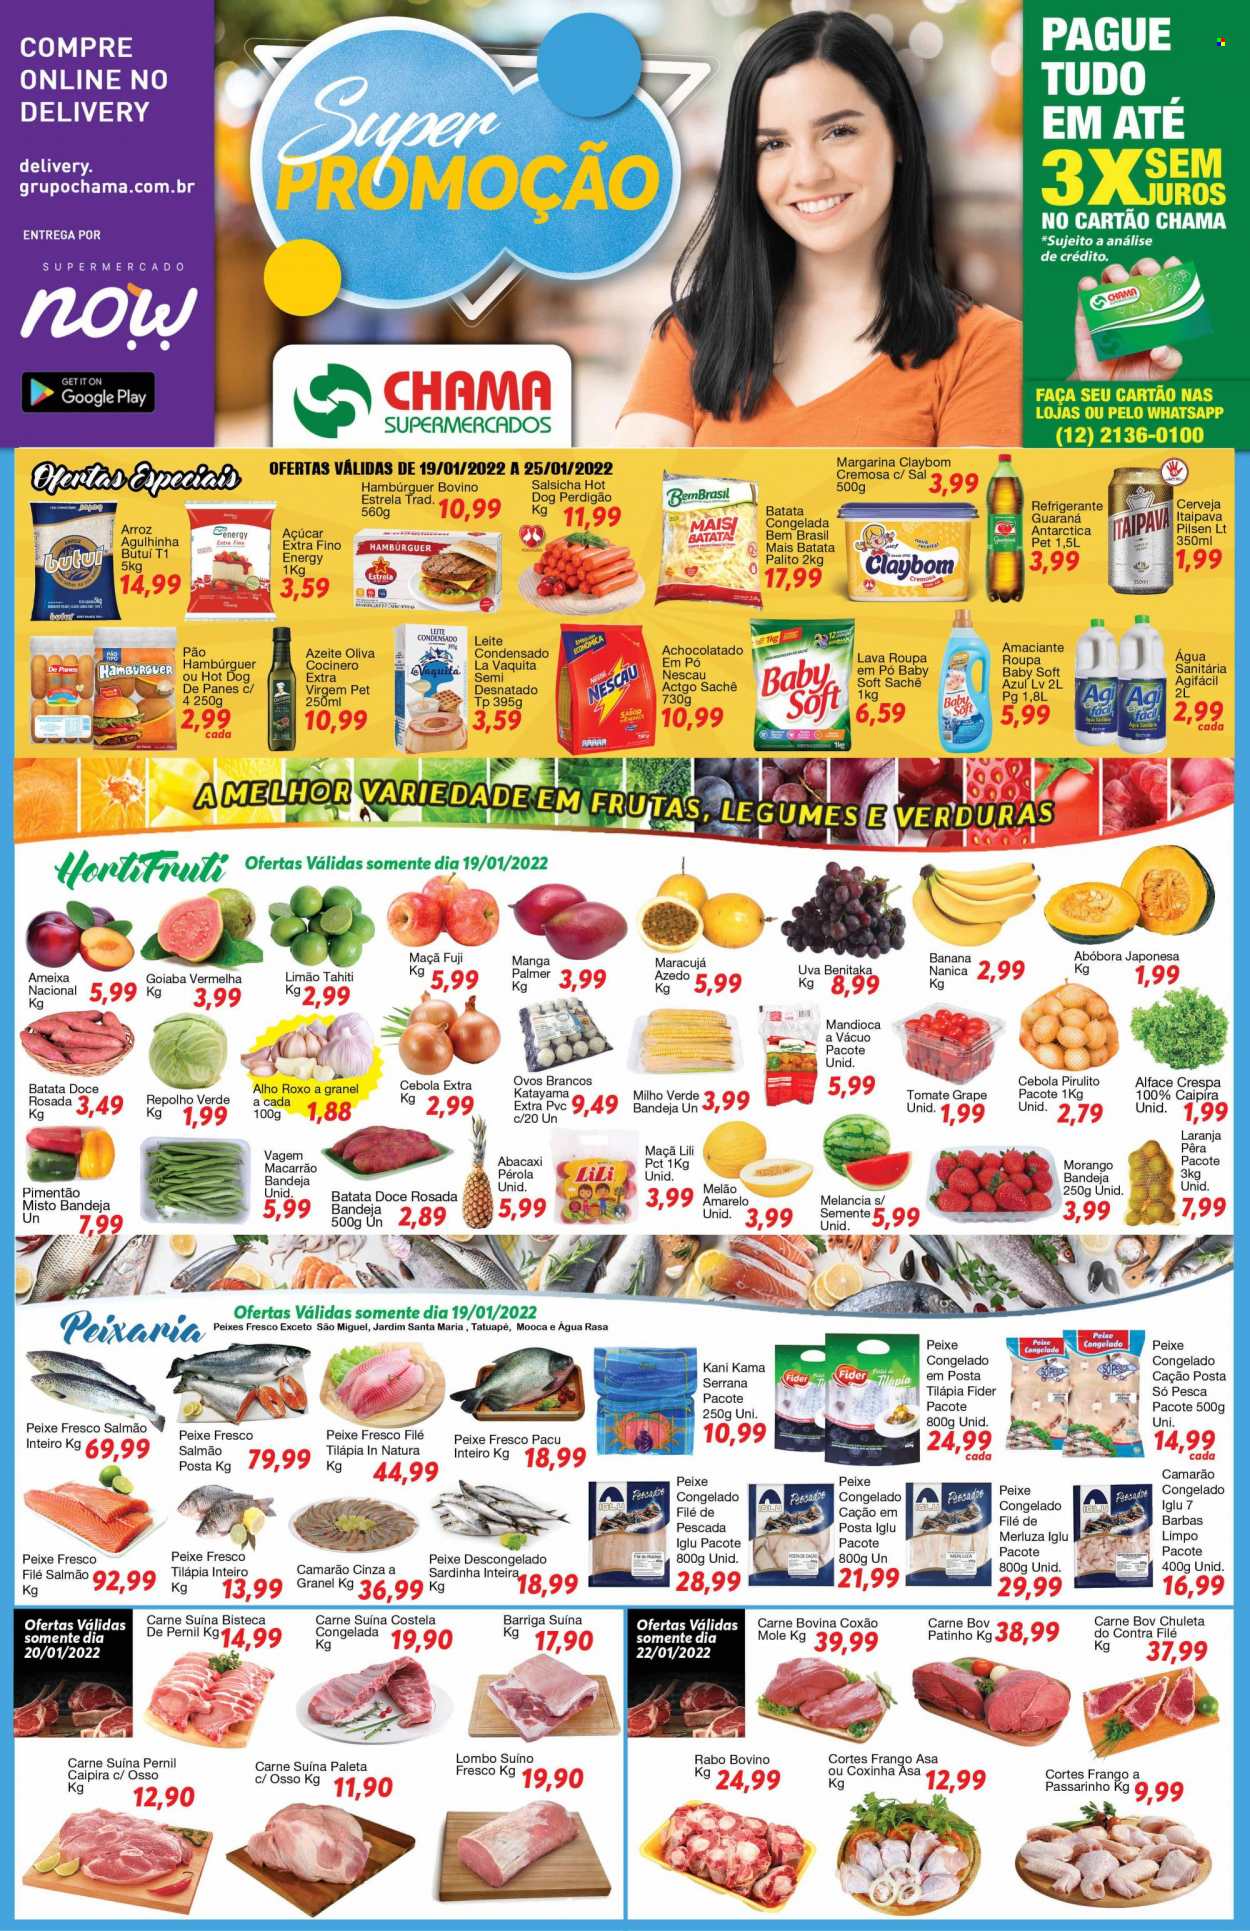 Encarte Chama Supermercados  - 19.01.2022 - 25.01.2022.